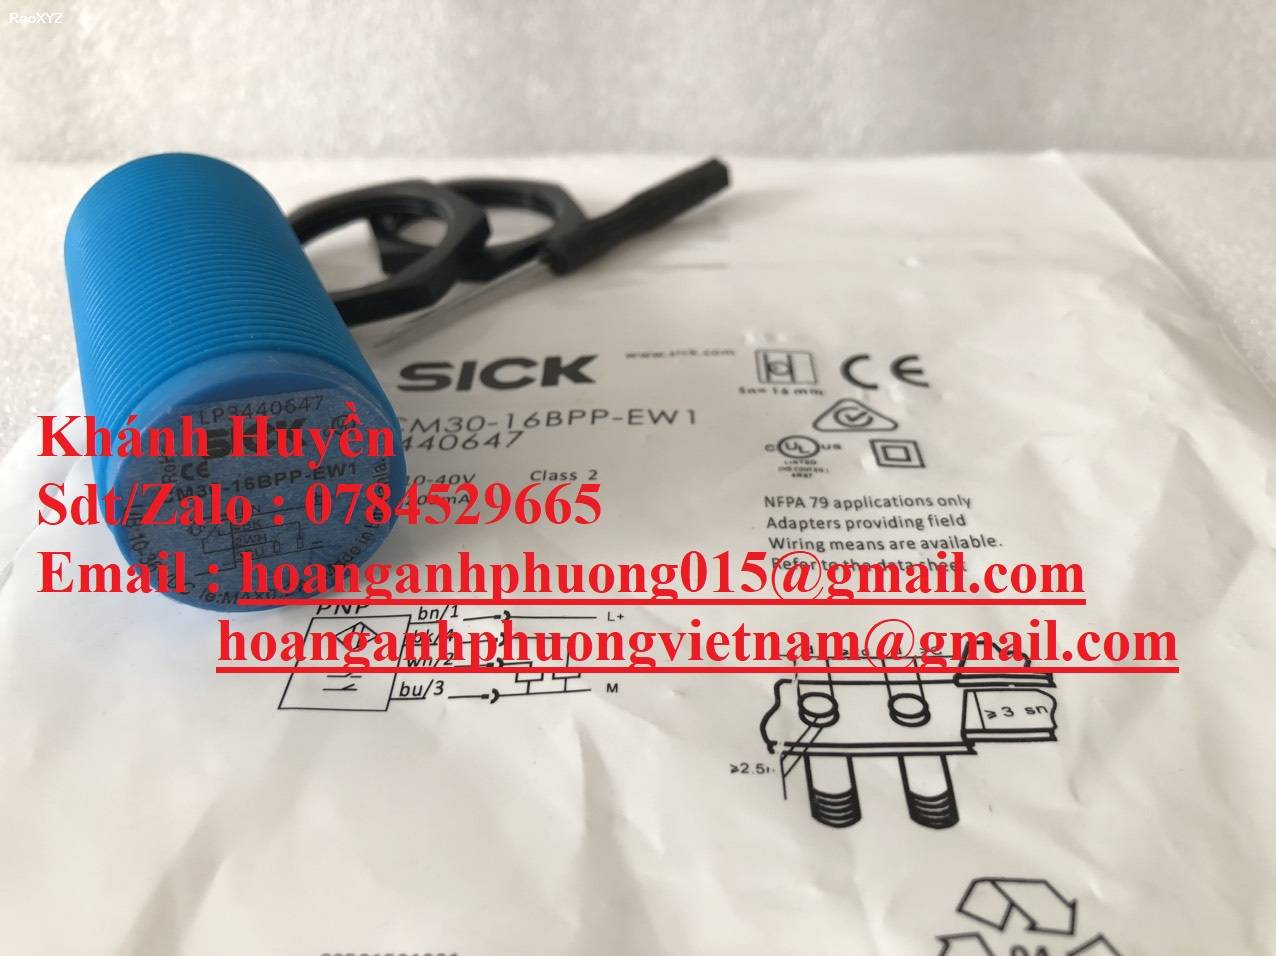 Cảm biến tiệm cận Sick CM30-16BPP-EW1 (3440647) hàng nhập khẩu giá tốt